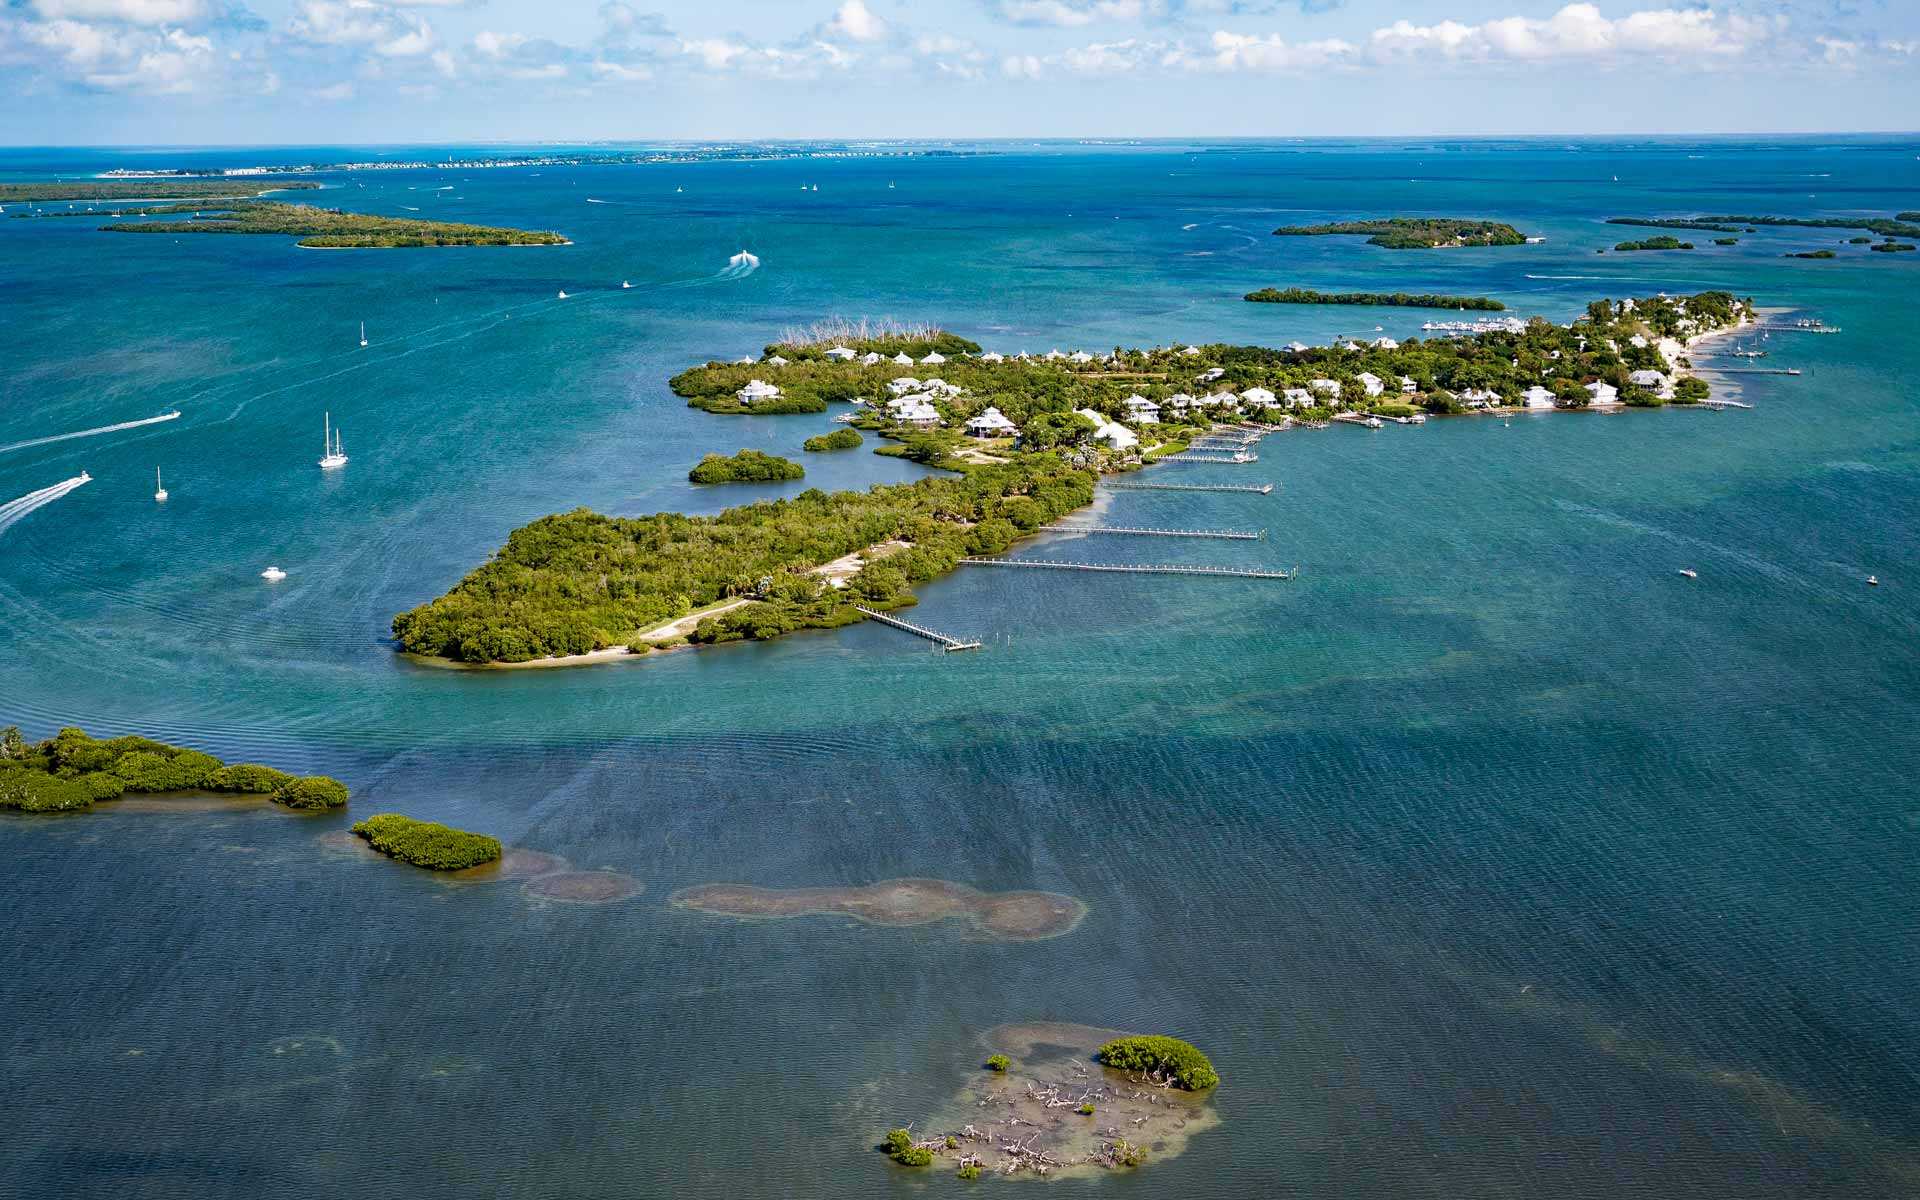 Minamos island. Остров Фишер Флорида. Пайн-Айленд. Архипелаг Флорида-кис. Питиусские острова.